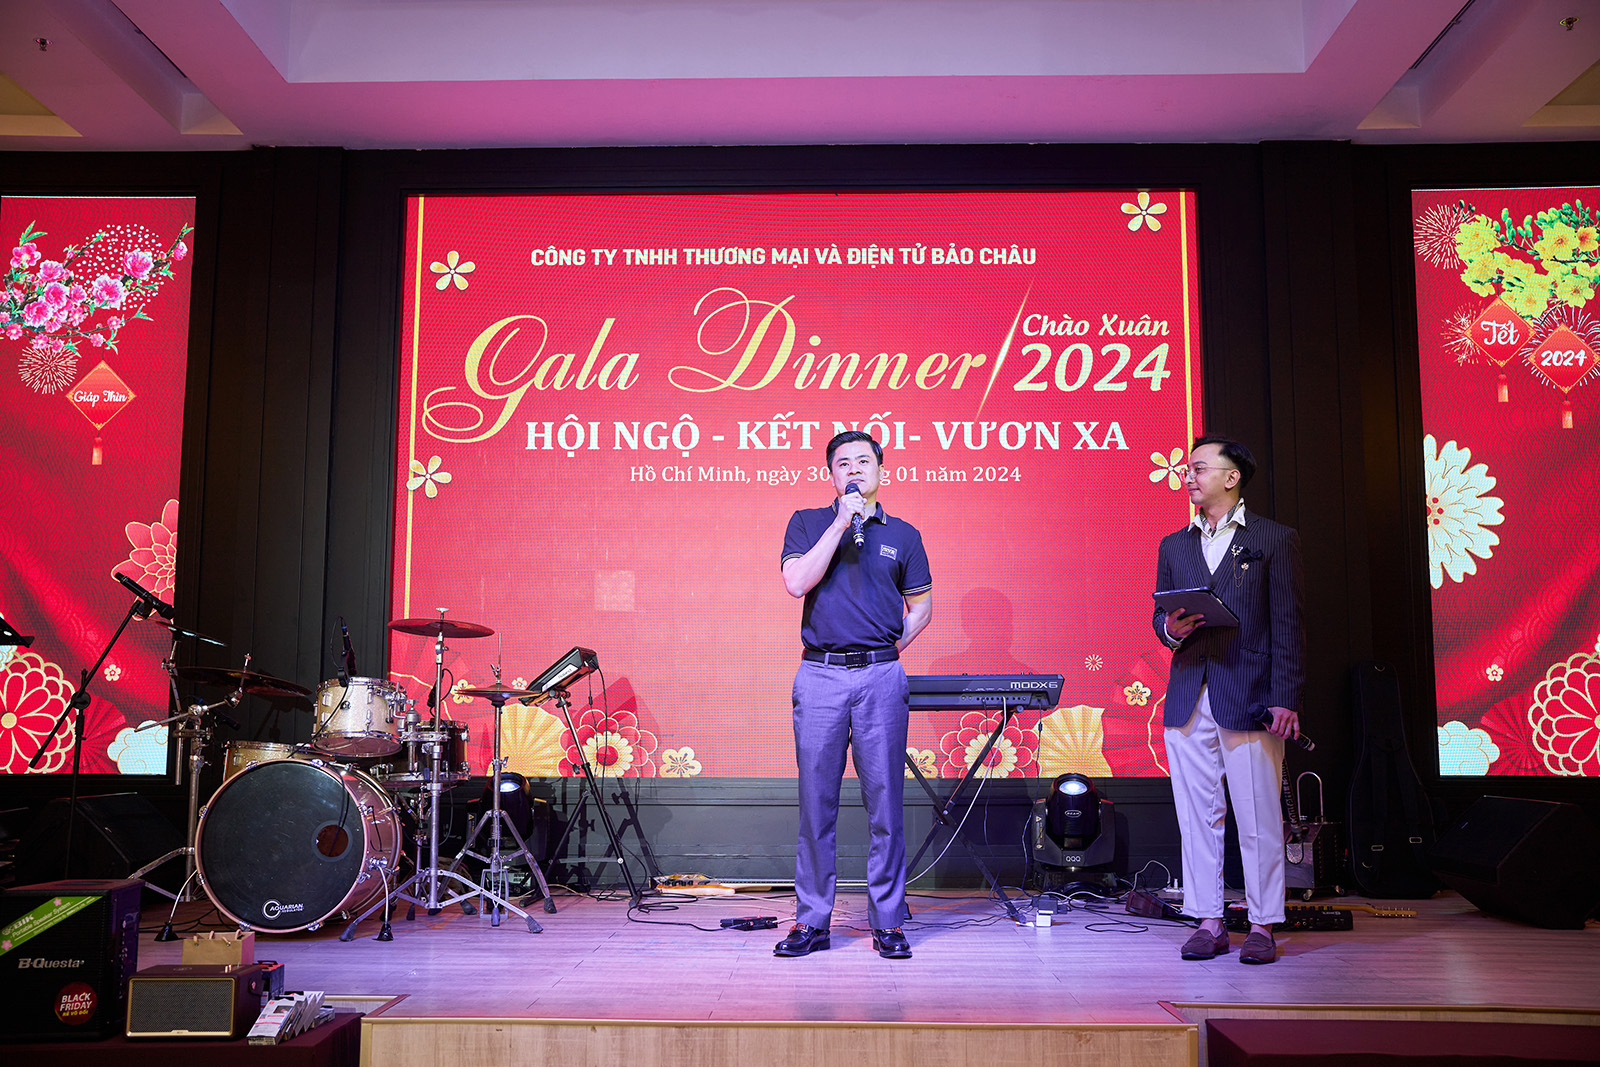 Gala Dinner 2024: Hội ngộ - Kết nối - Vươn xa